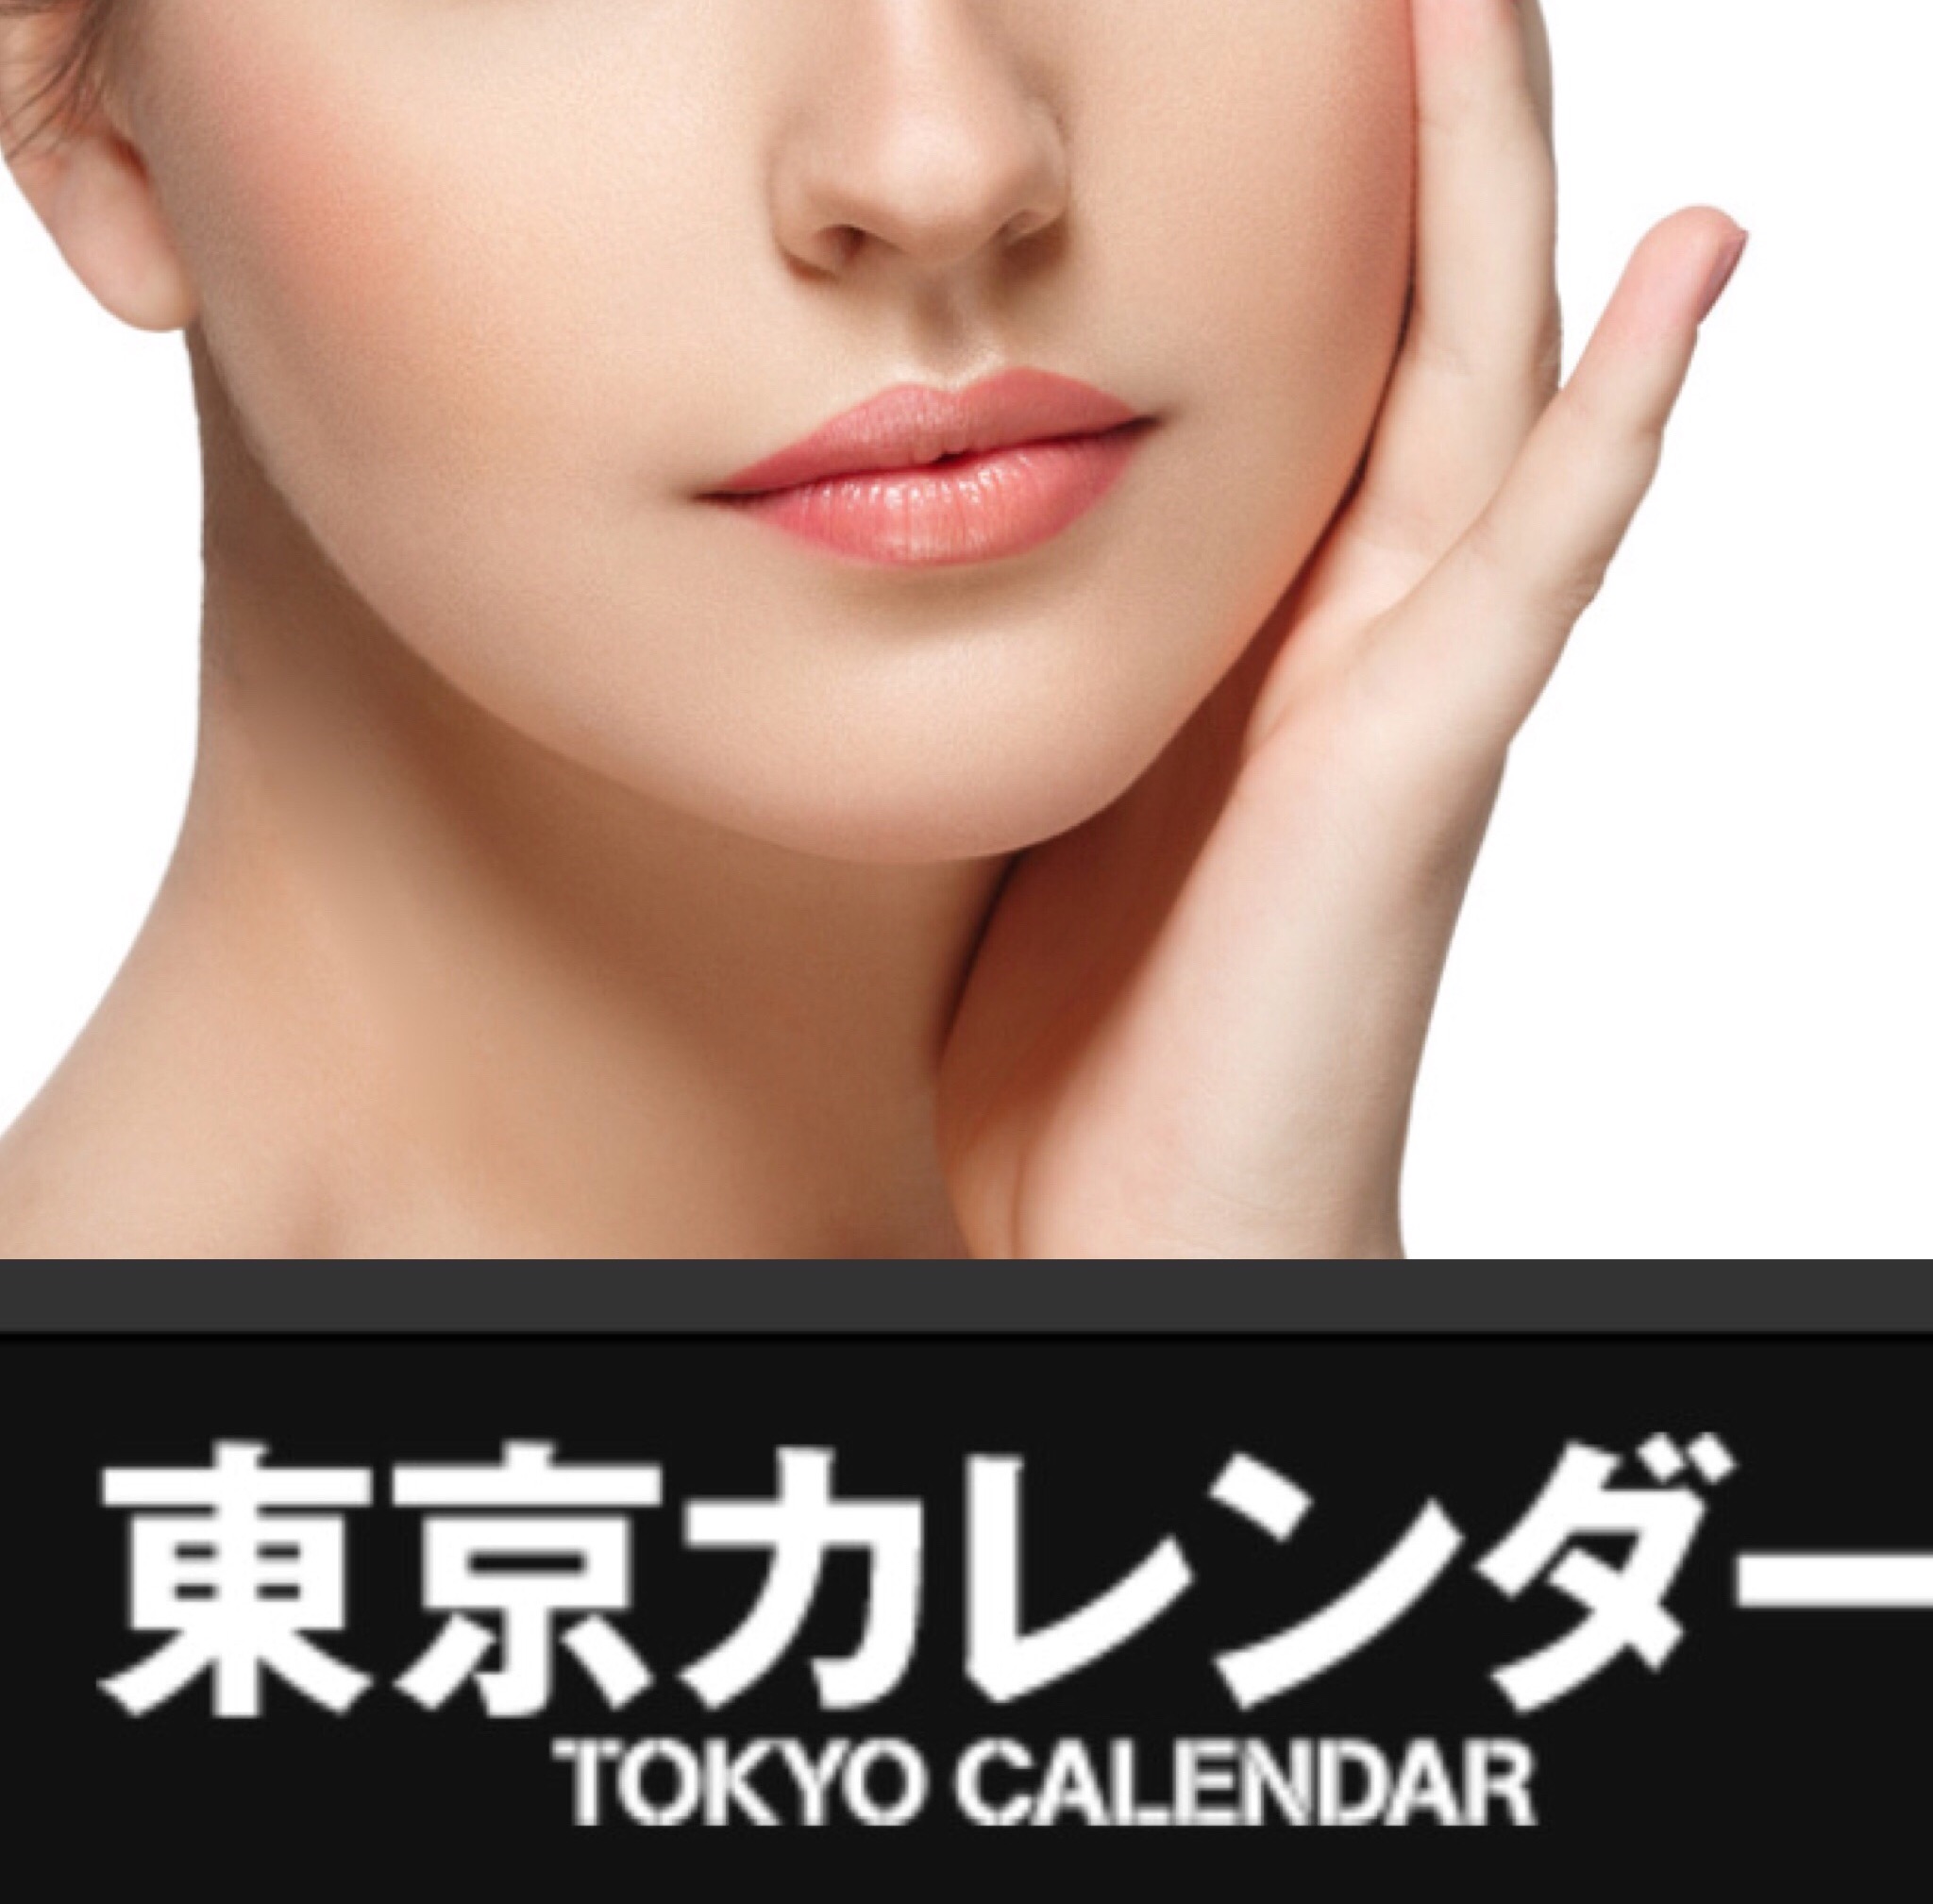 velle viergeスキンケアコスメが大人のスタイルマガジン「東京カレンダー」に掲載されました